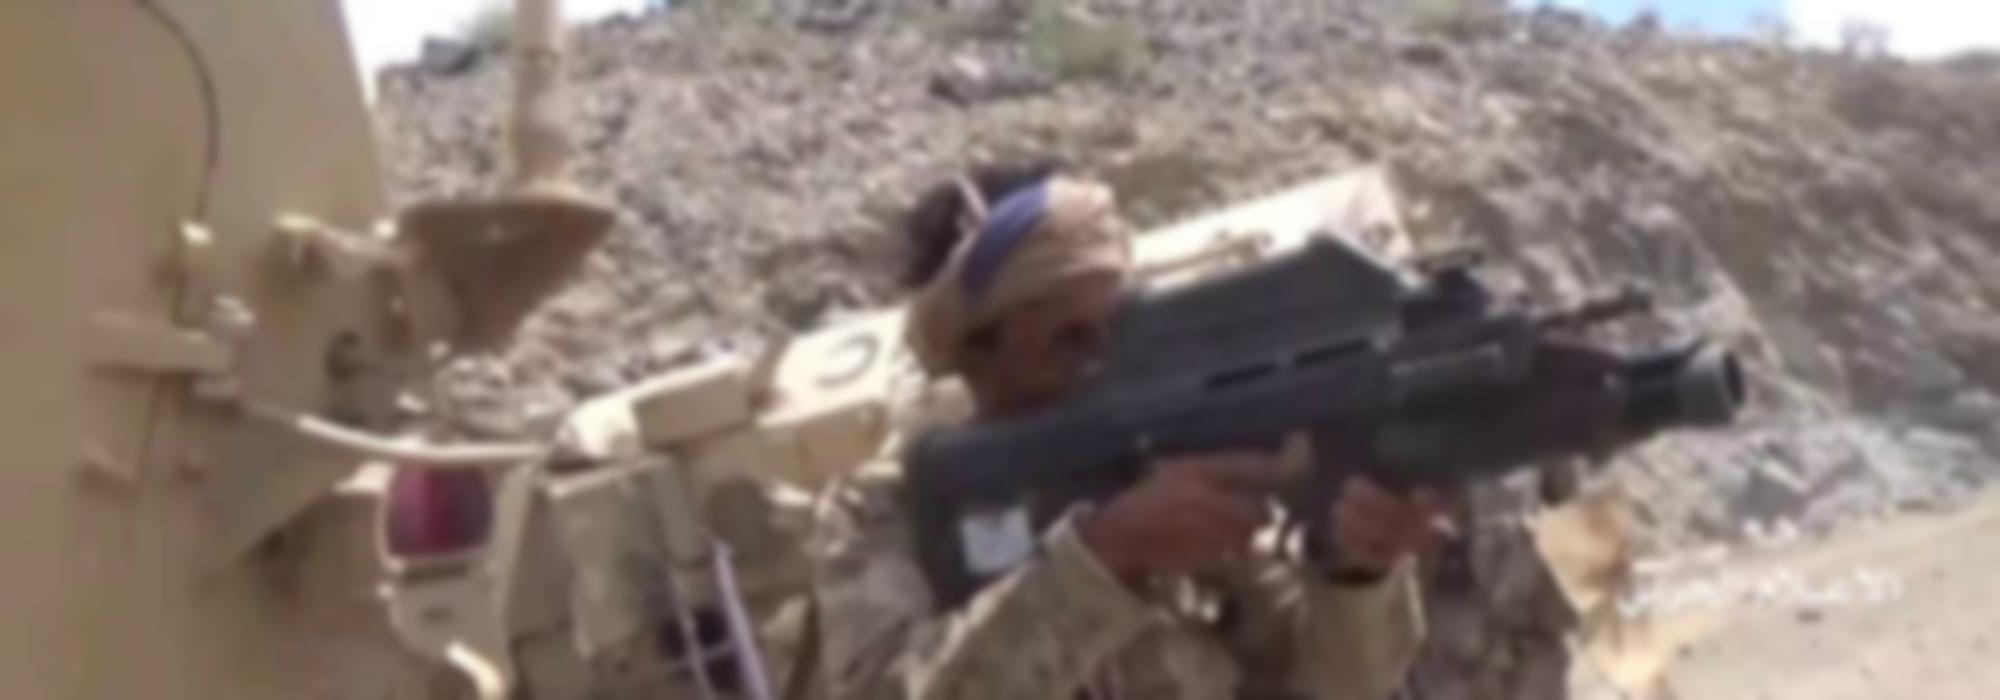 F2000 in handen van een Houthi strijder